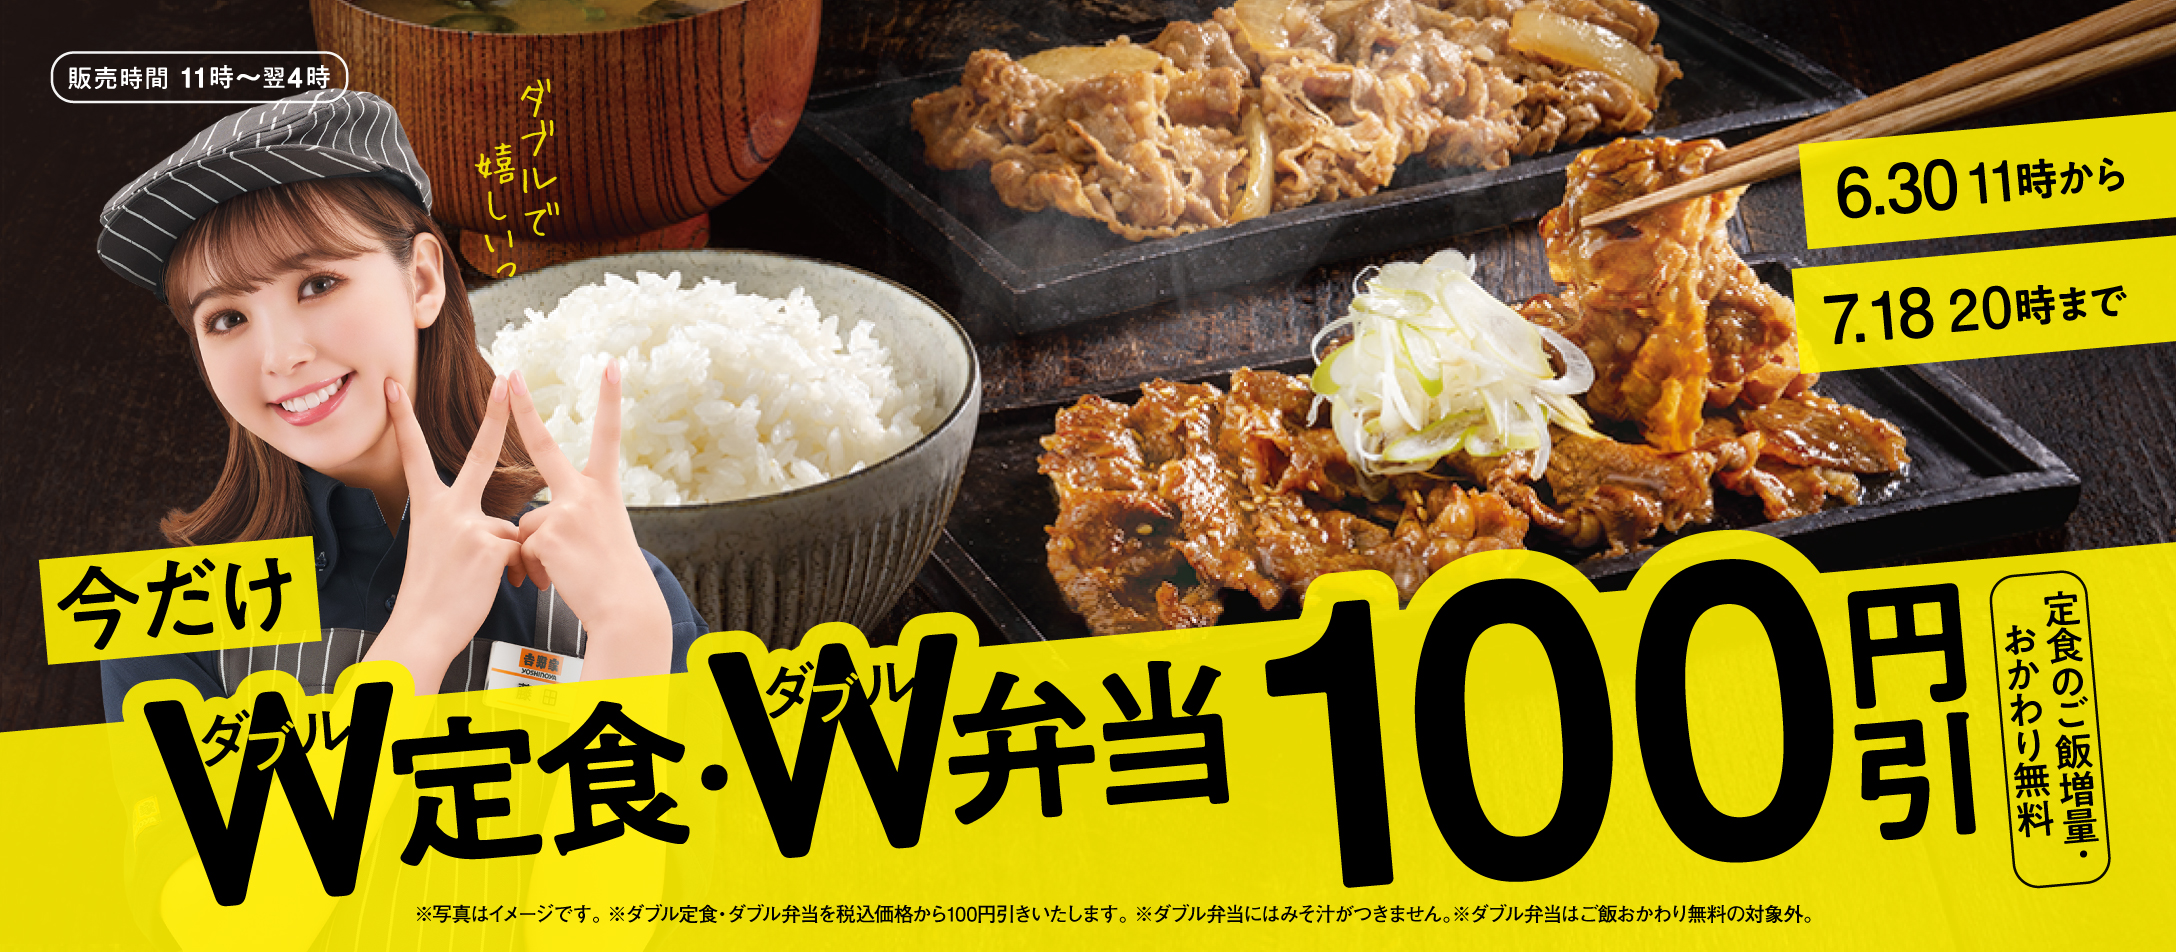 【6月30日～7月18日】W定食・W弁当100円引きキャンペーン